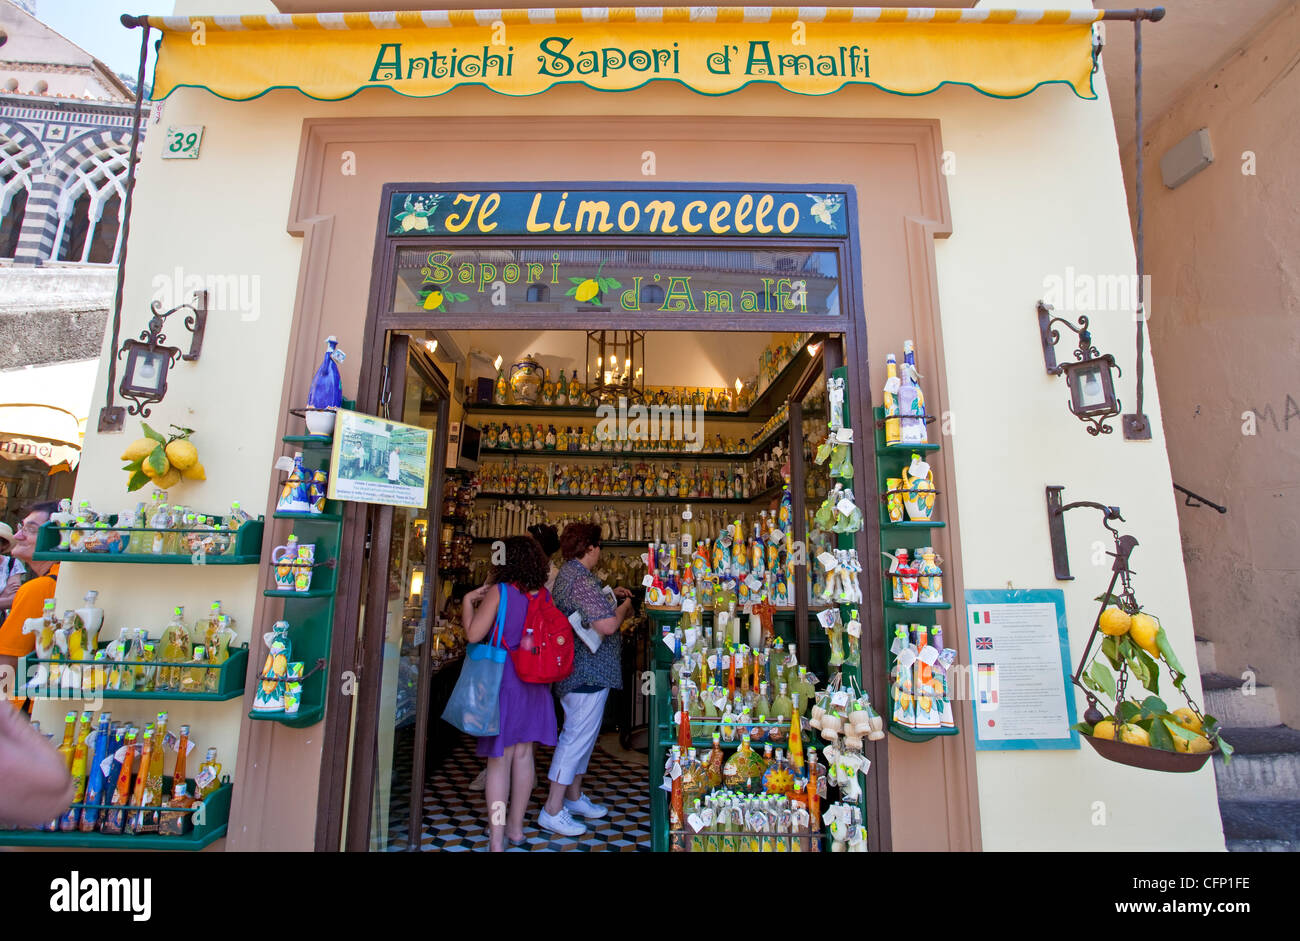 Il Limoncello, liqueur de citron shop à Piazza Buonarroti, Amalfi, côte amalfitaine, UNESCO World Heritage site, Campanie, Italie, Méditerranée, Europe Banque D'Images